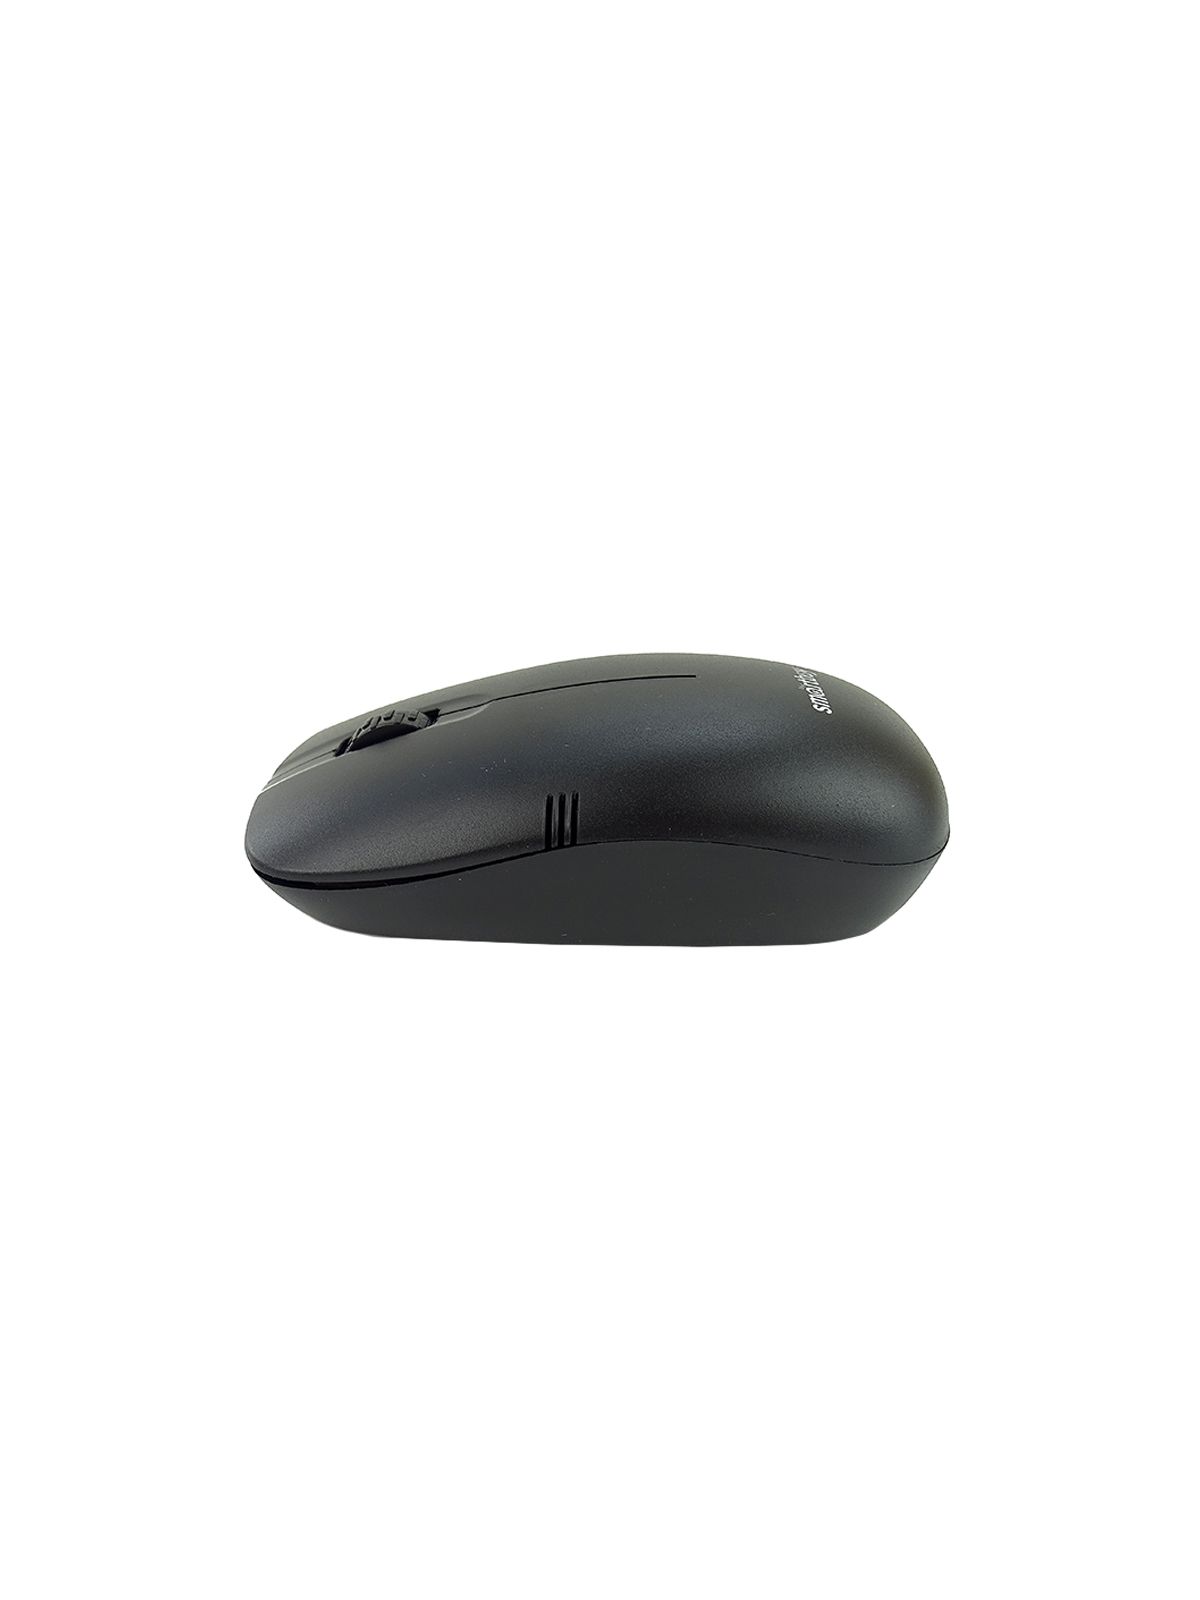 Мышь беспроводная "Smartbuy ONE 377" черная